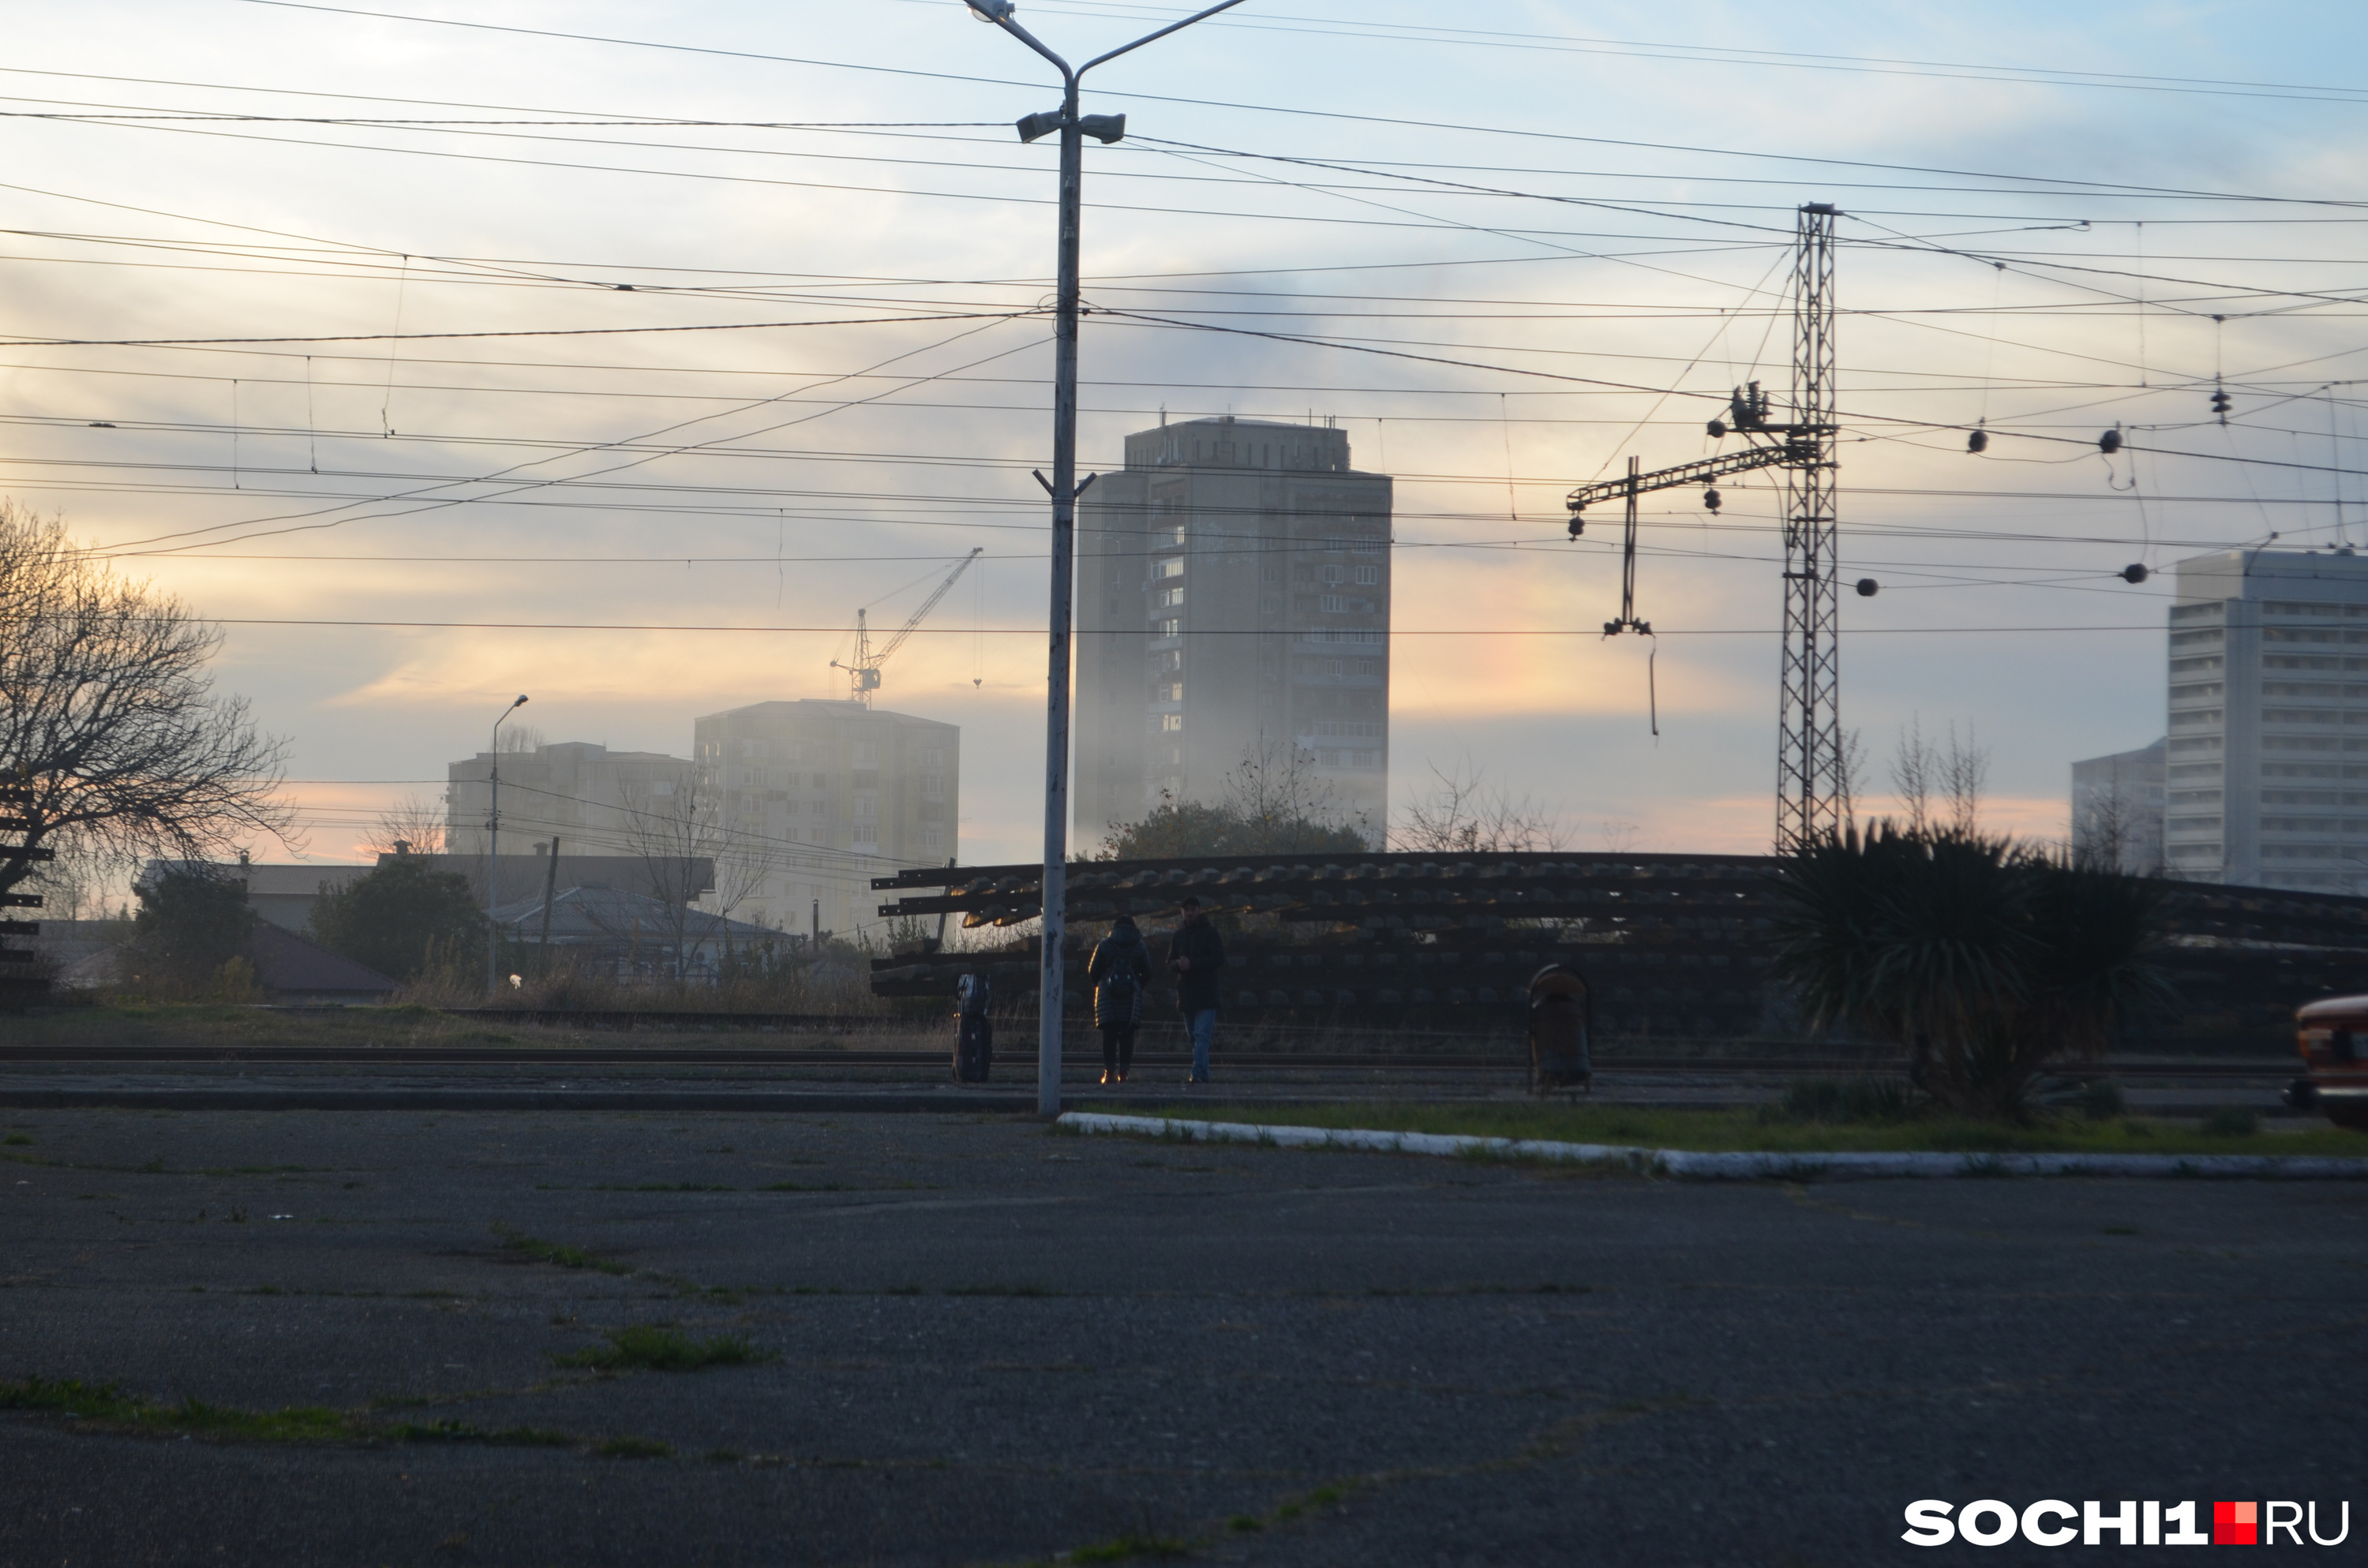 Железнодорожный вокзал в Гагре. Пейзаж напоминает промышленный город в России